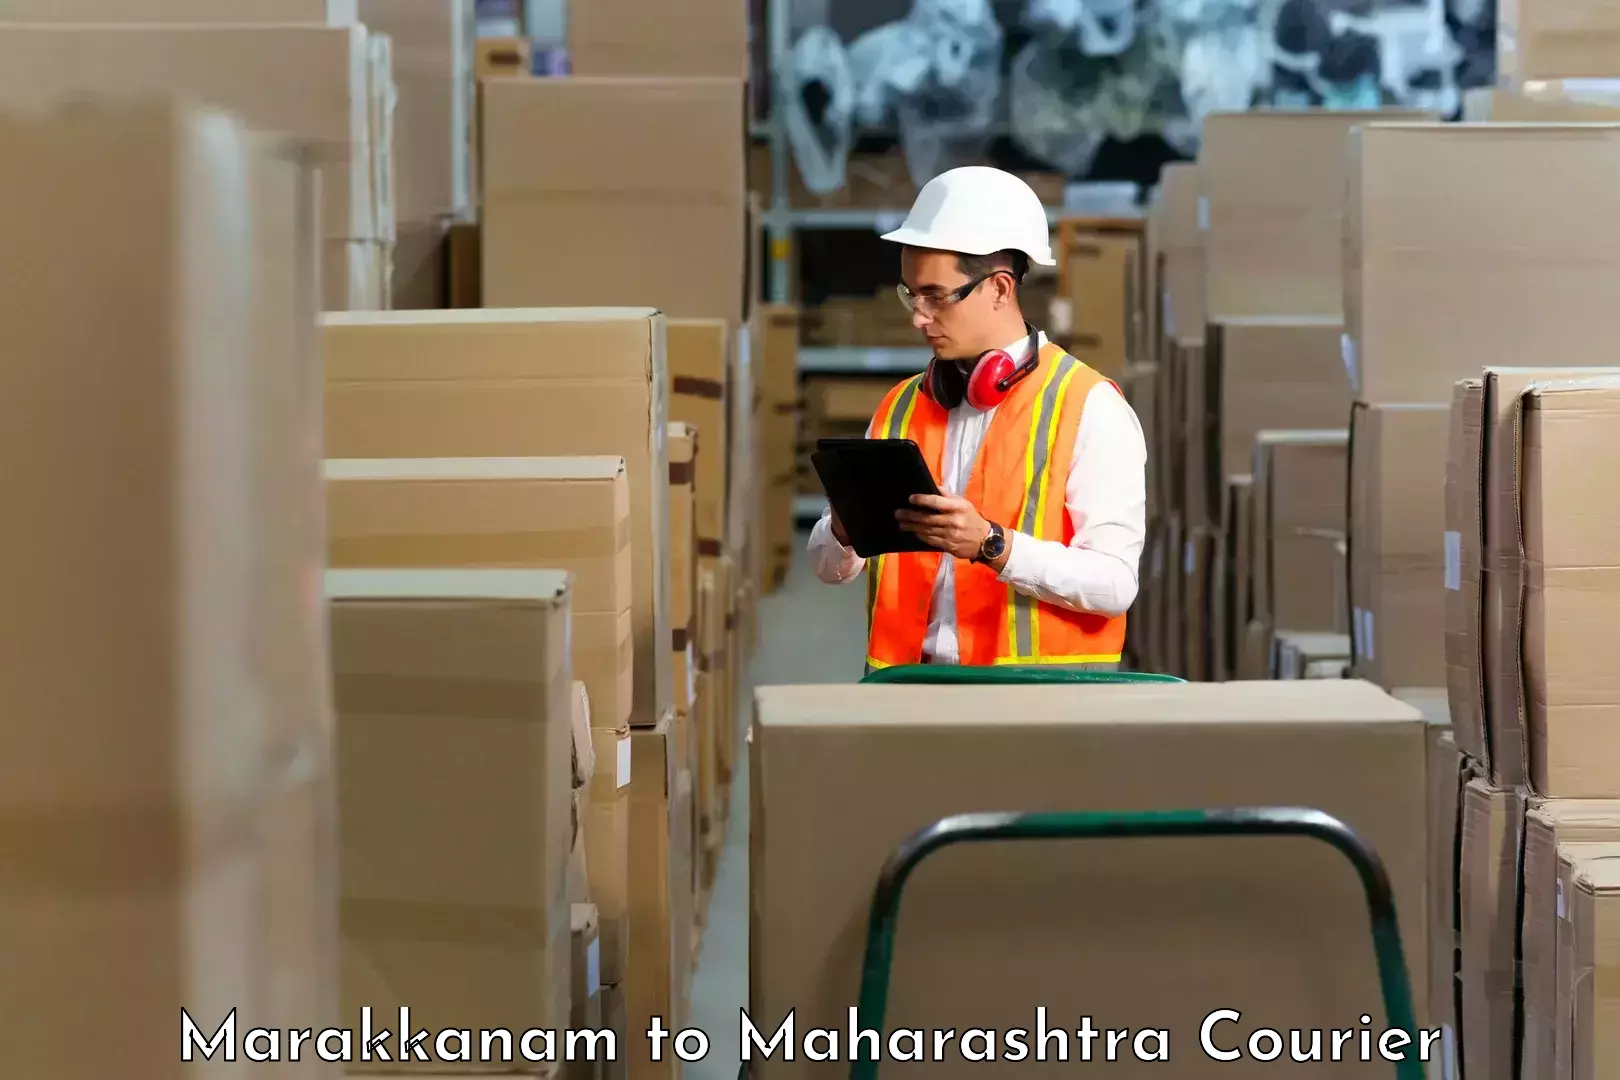 Efficient parcel service in Marakkanam to Shivajinagar